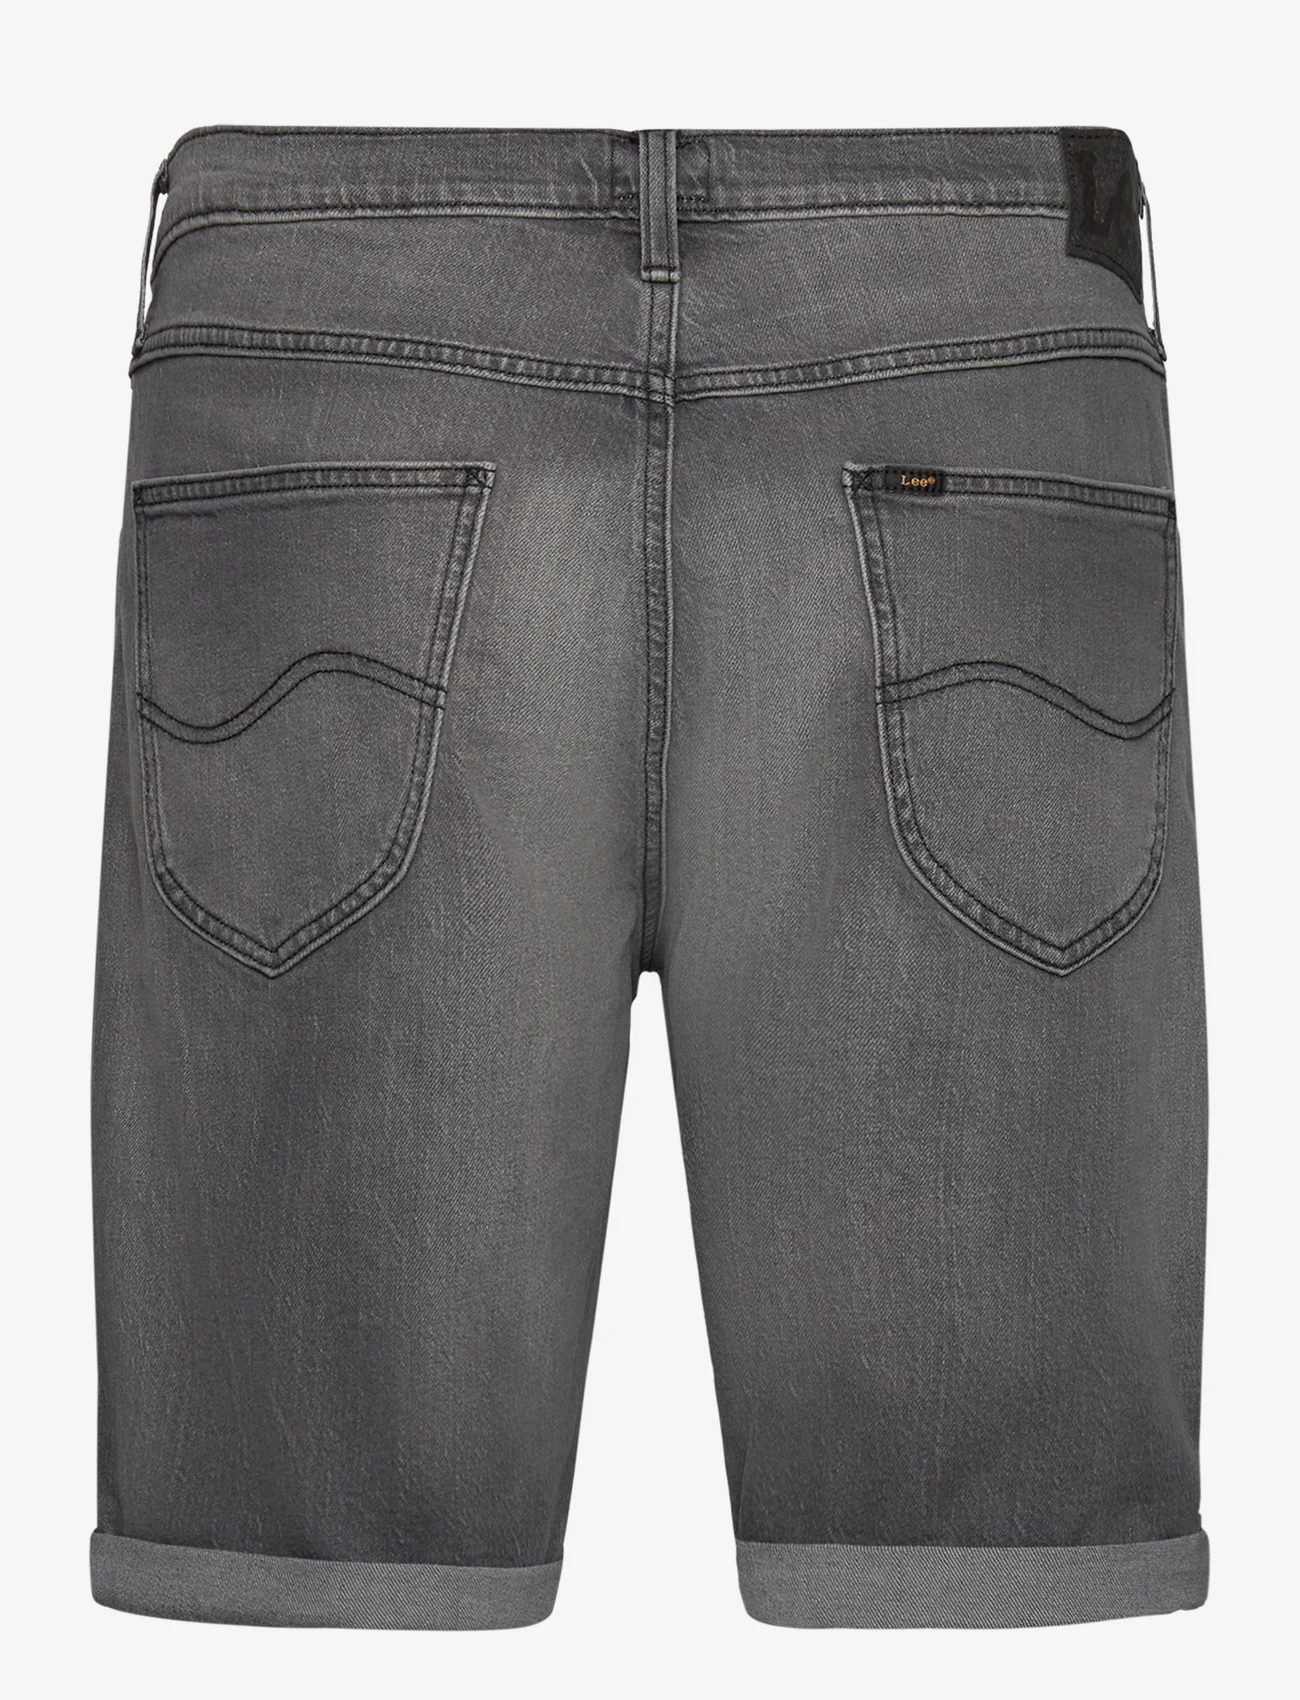 Lee Jeans - 5 POCKET SHORT - lühikesed teksapüksid - washed grey - 1